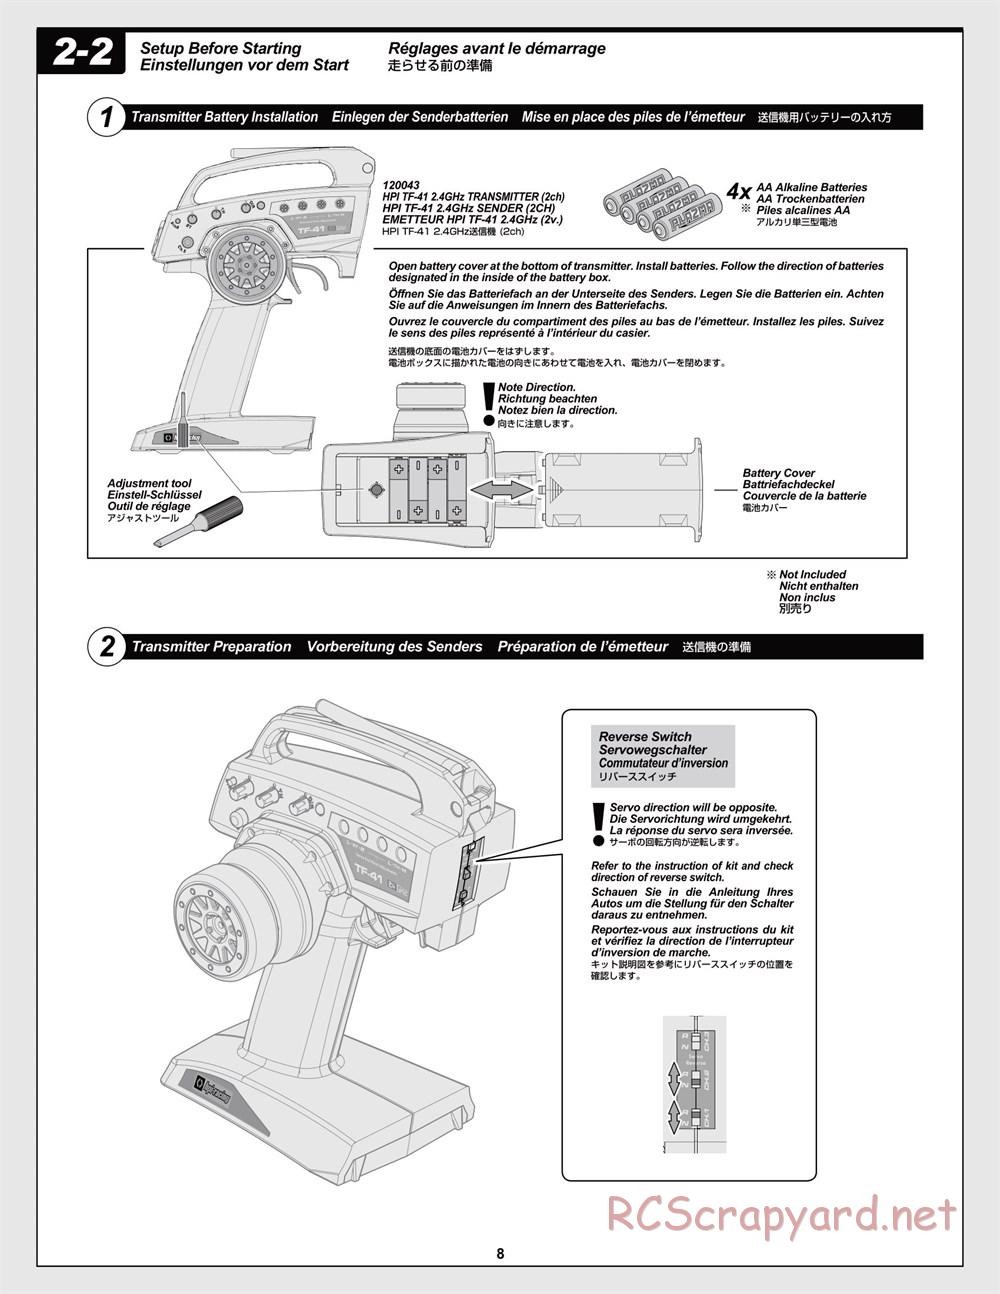 HPI - Jumpshot MT V2 - Manual - Page 8